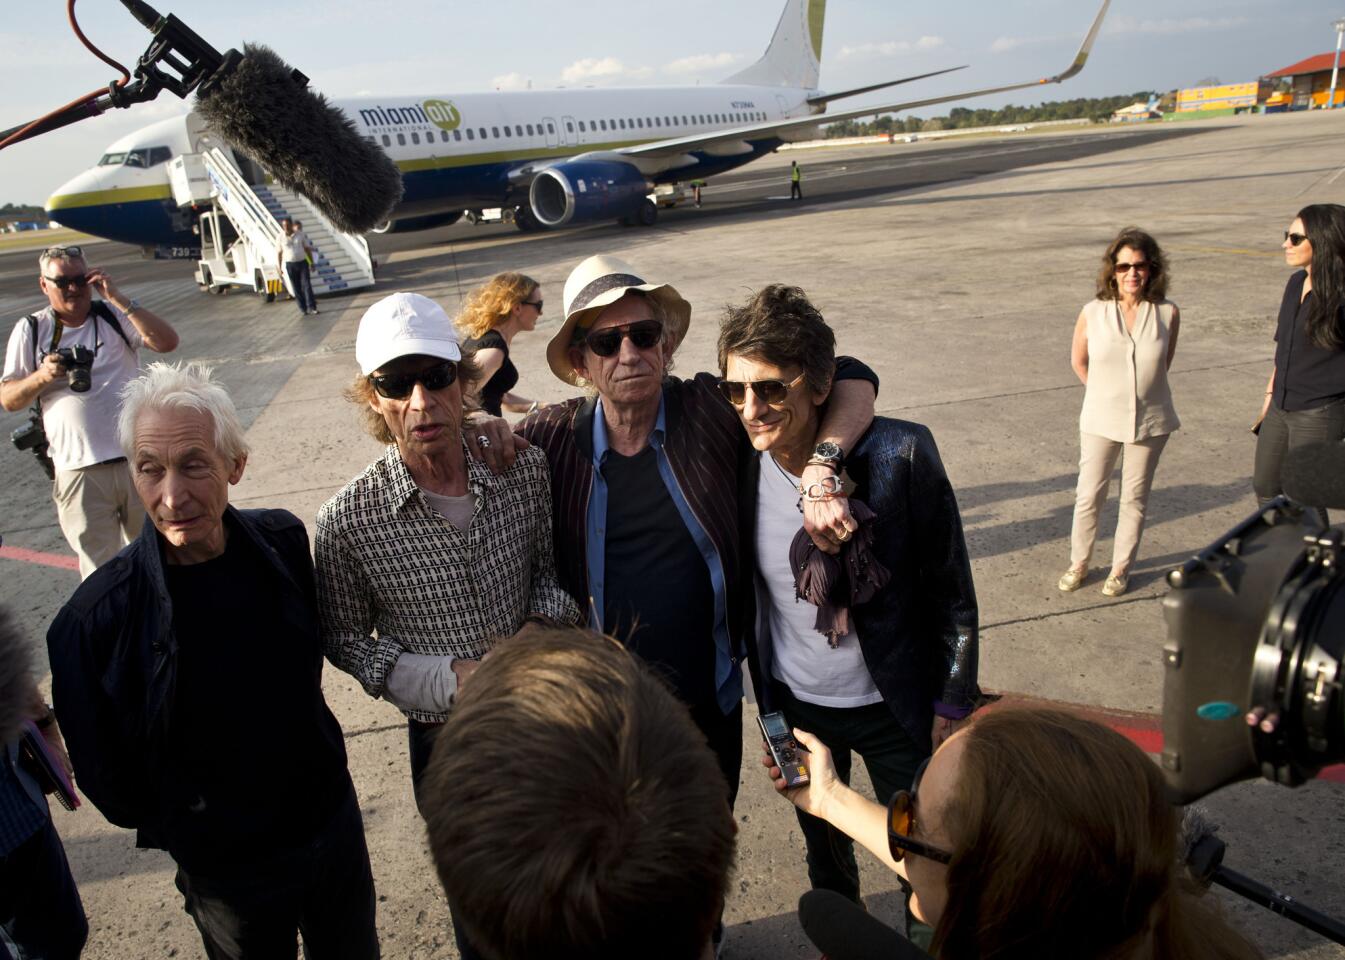 Rolling Stones in Cuba